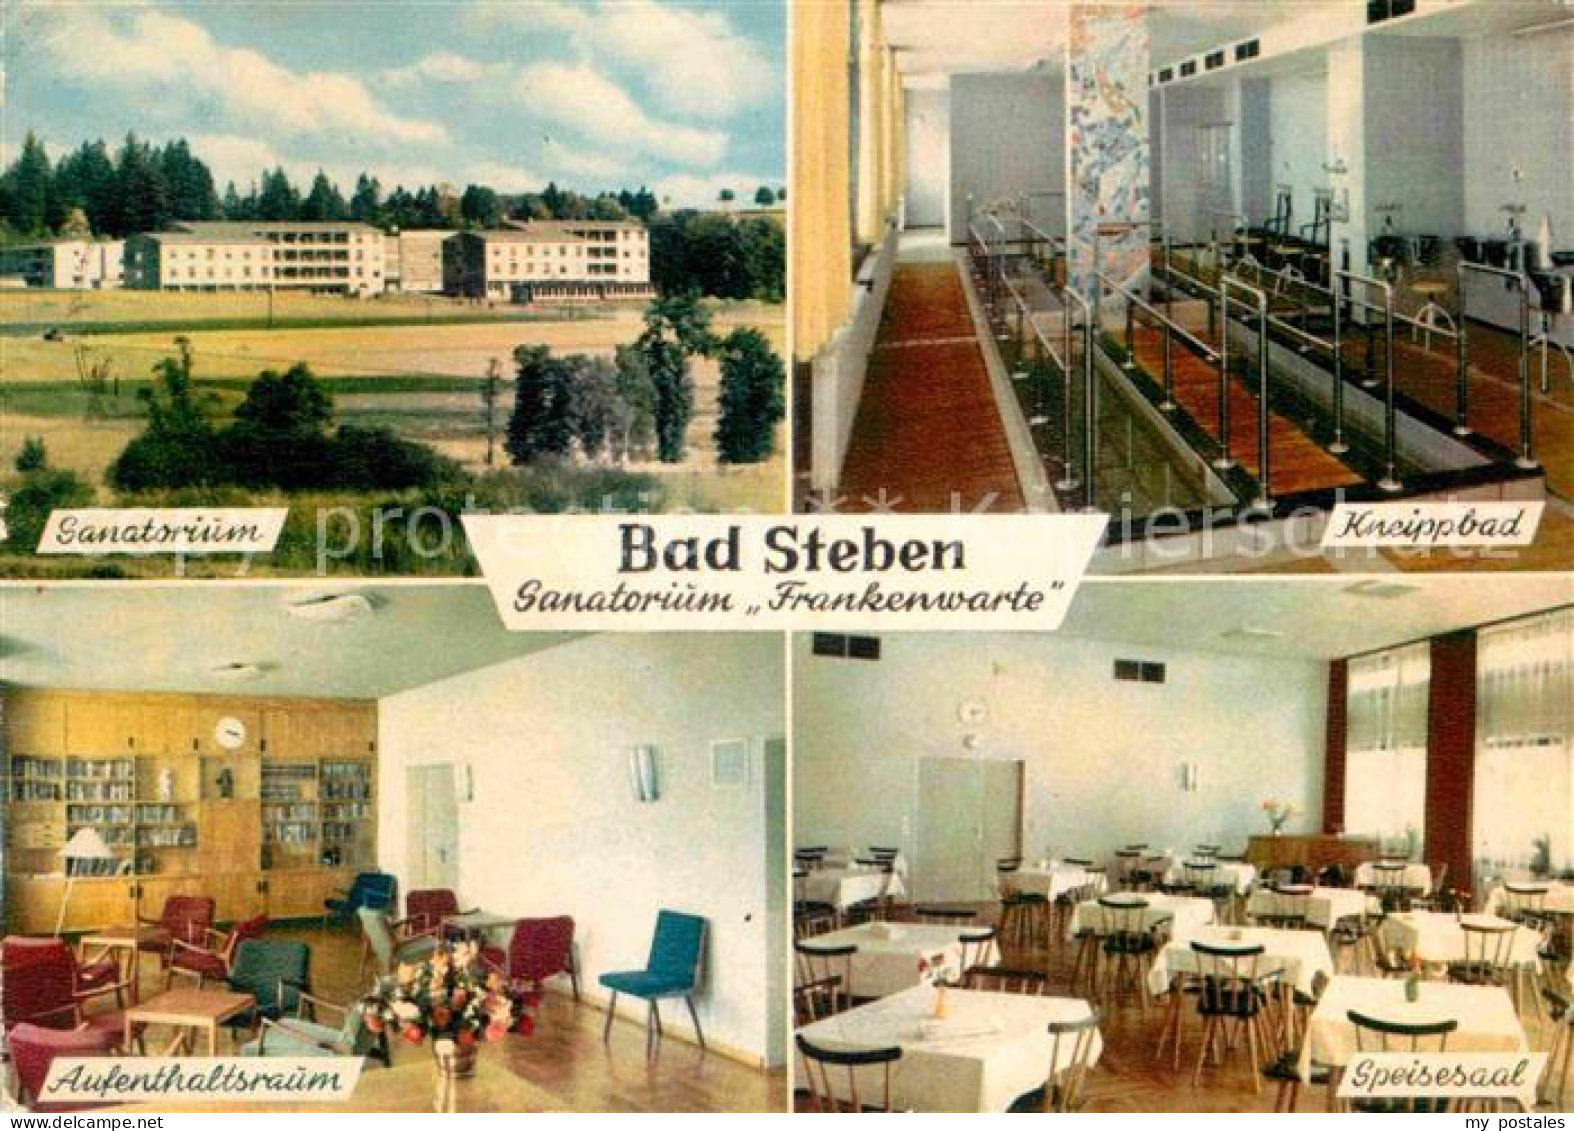 72800682 Bad Steben Sanatorium Frankenwarte Kneippbad Speisesaal Aufenthaltsraum - Bad Steben